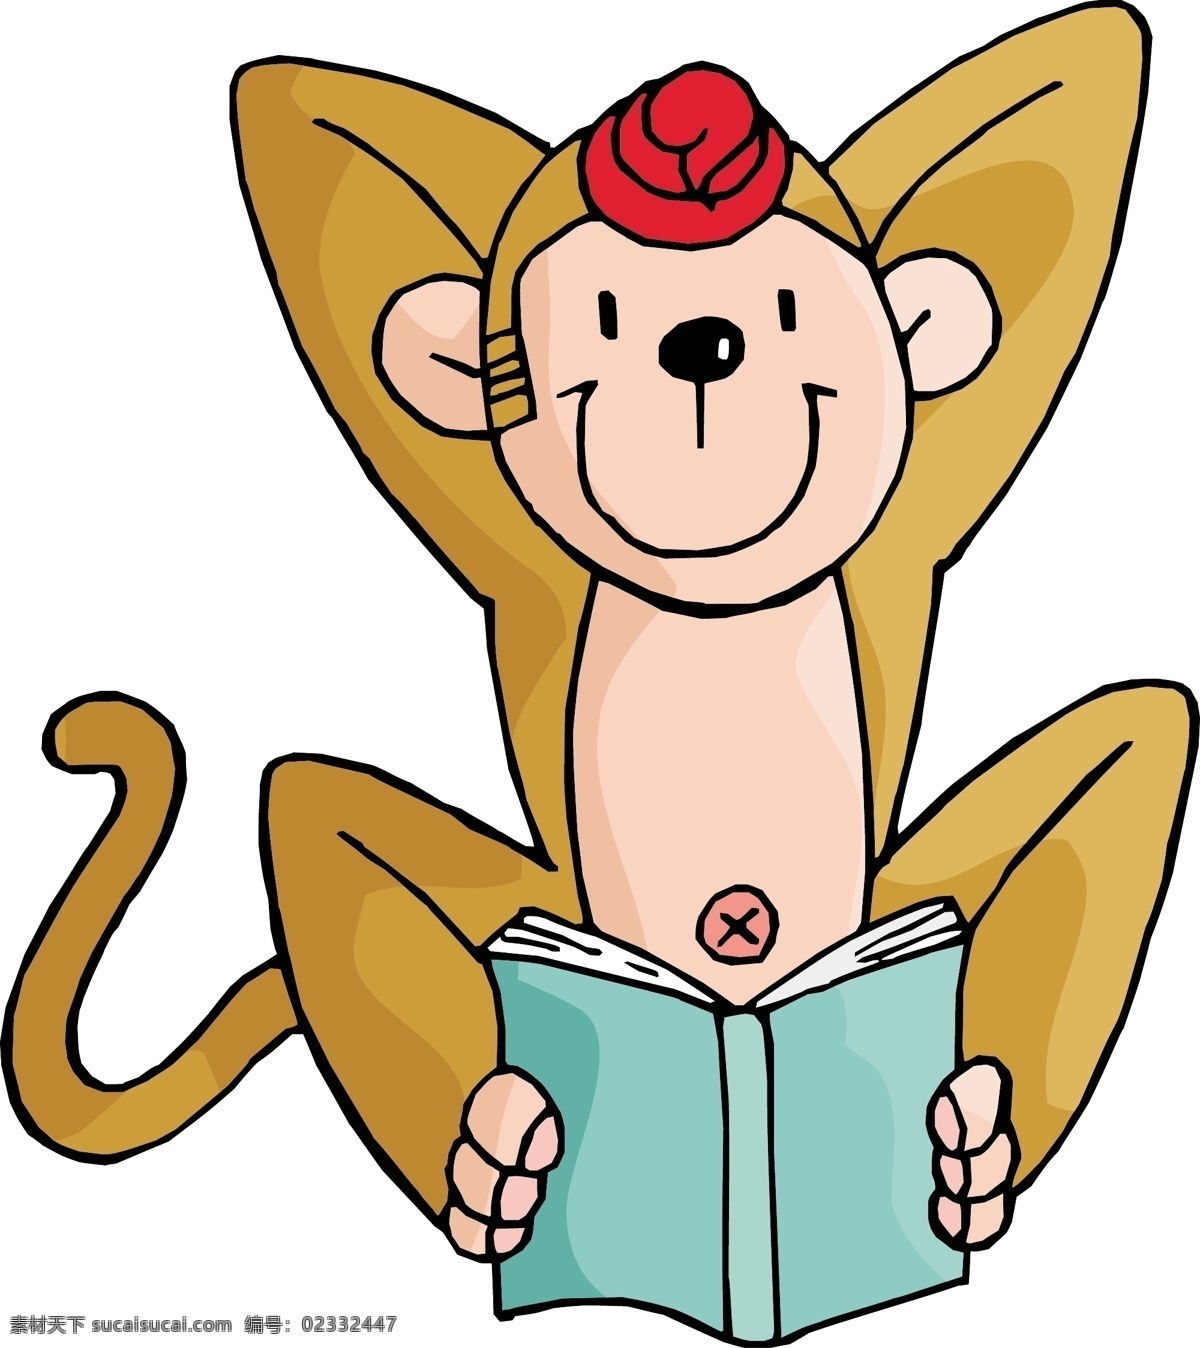 卡通矢量 卡通 卡通人物 卡通形象 动物 猴子 看书 书 小猴子 矢量 动漫动画